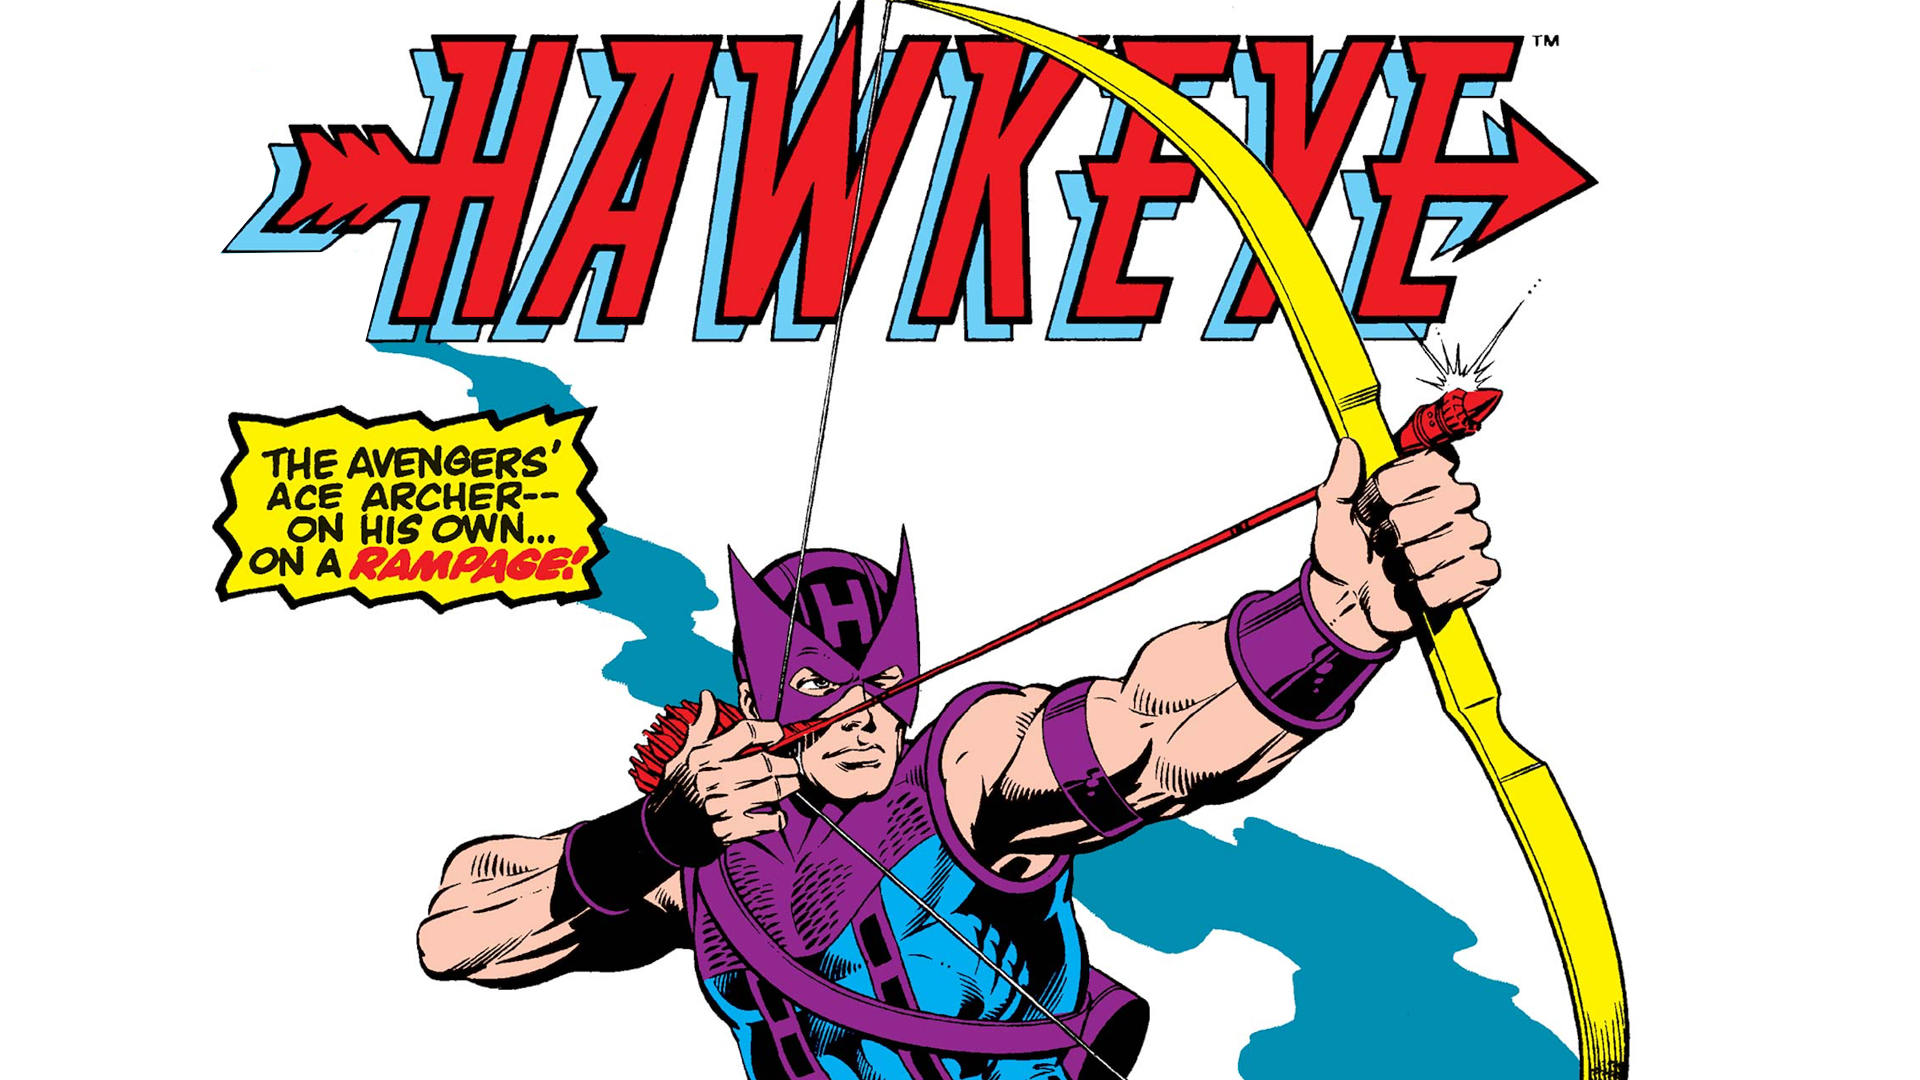 Hawkeye (1983) #1 released in 1983